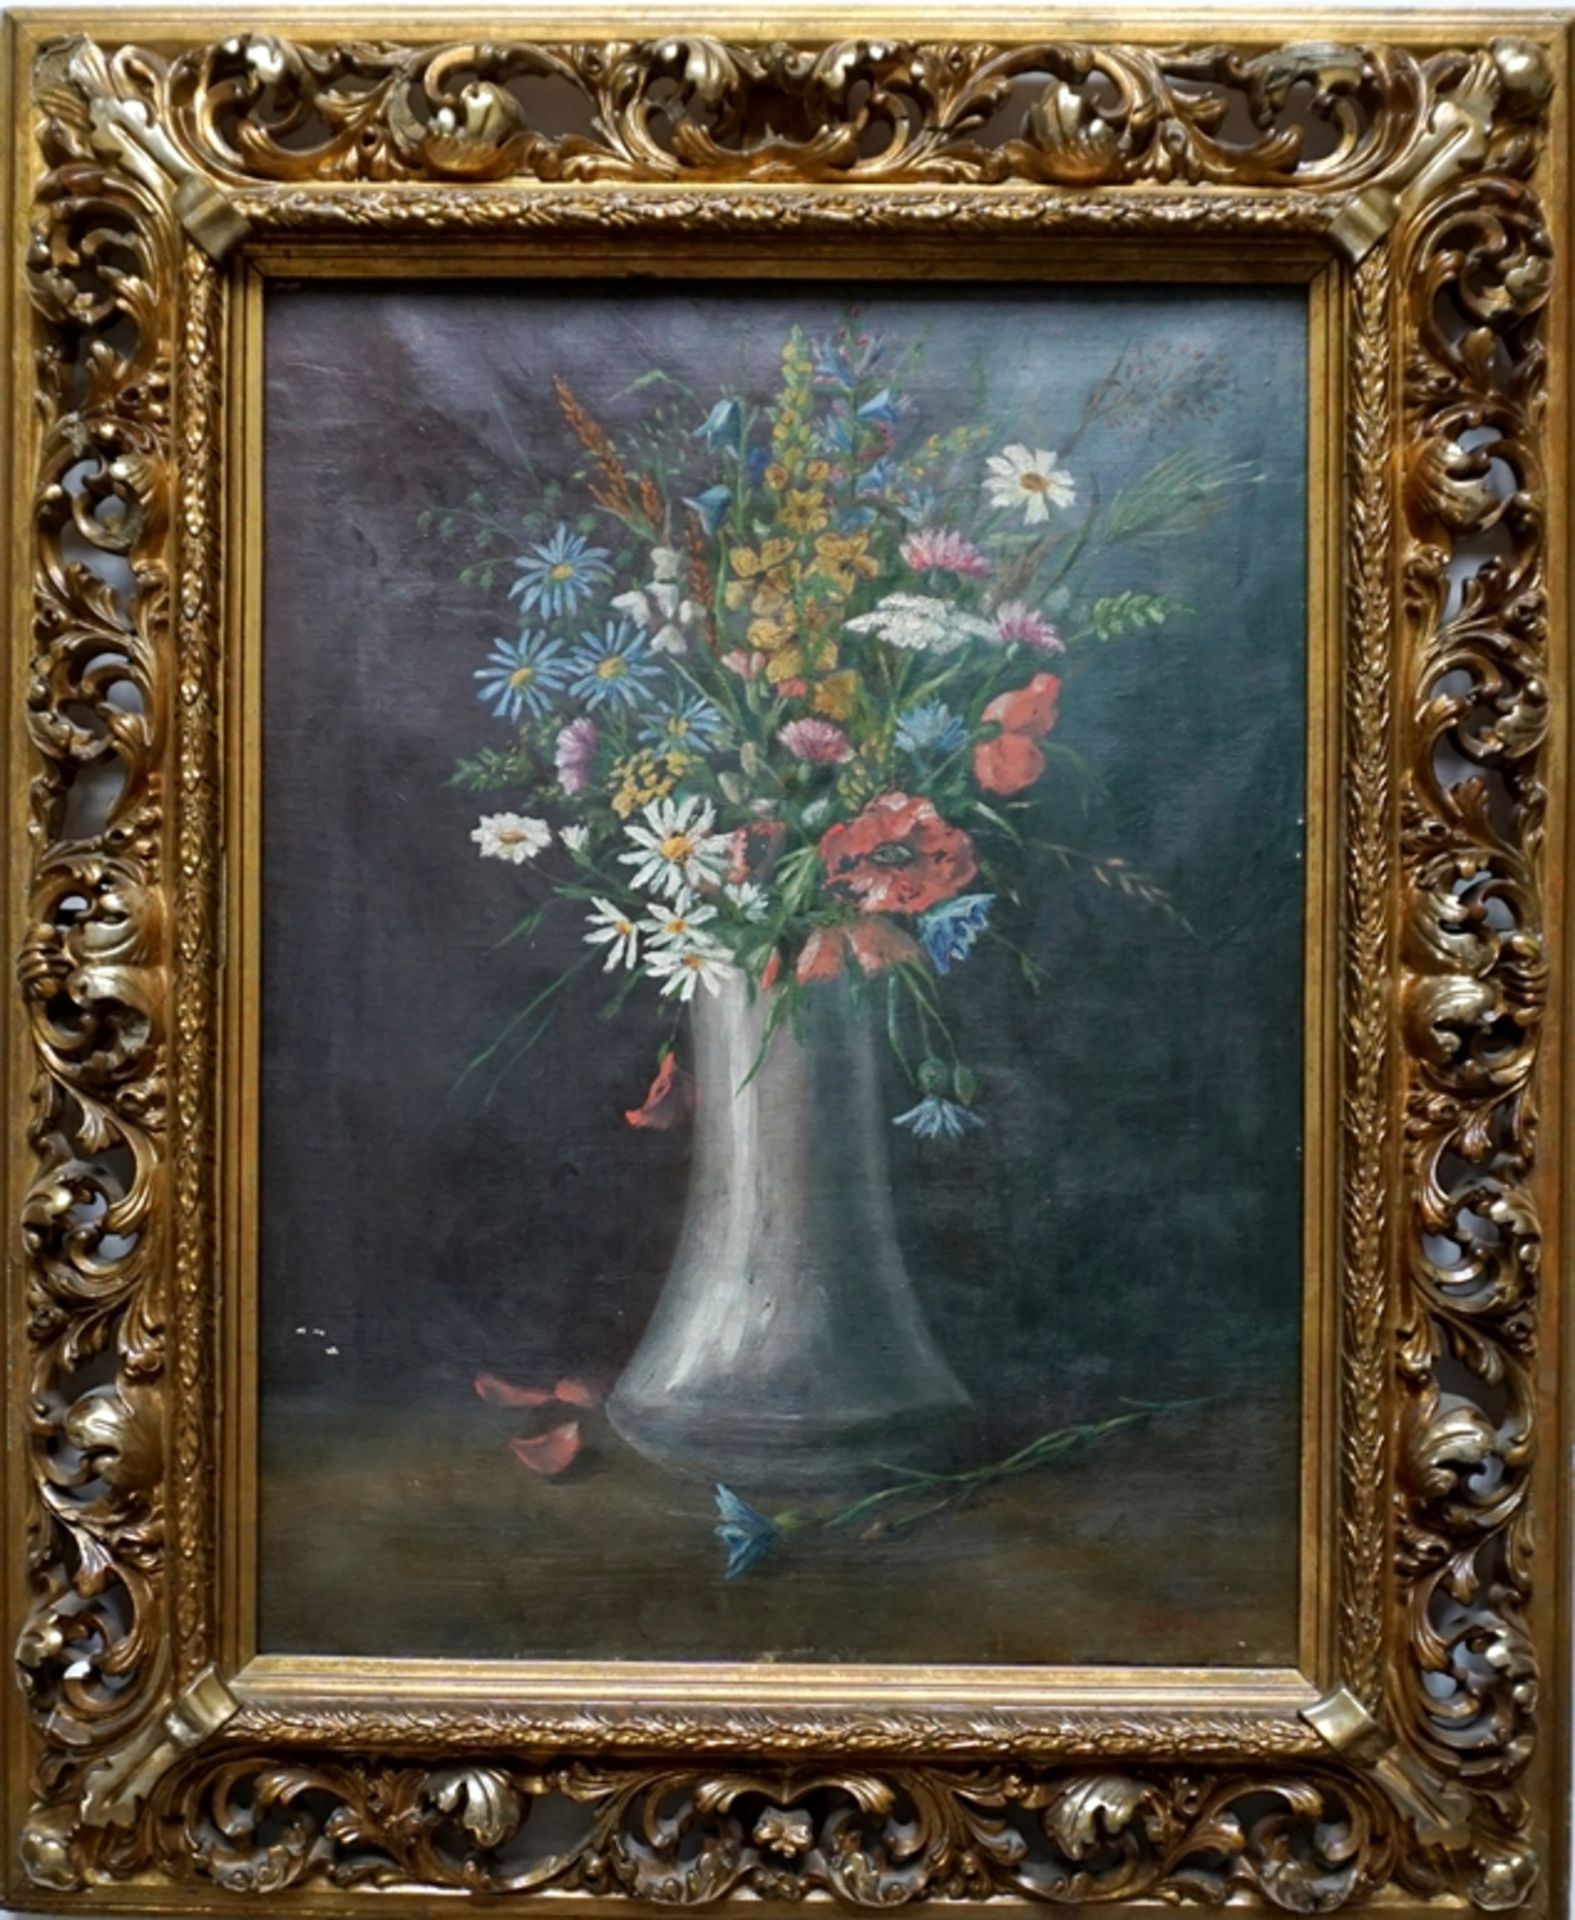 signiert "Dannemann", "Stillleben mit Wiesenblumen", 1920, Öl/Leinwand